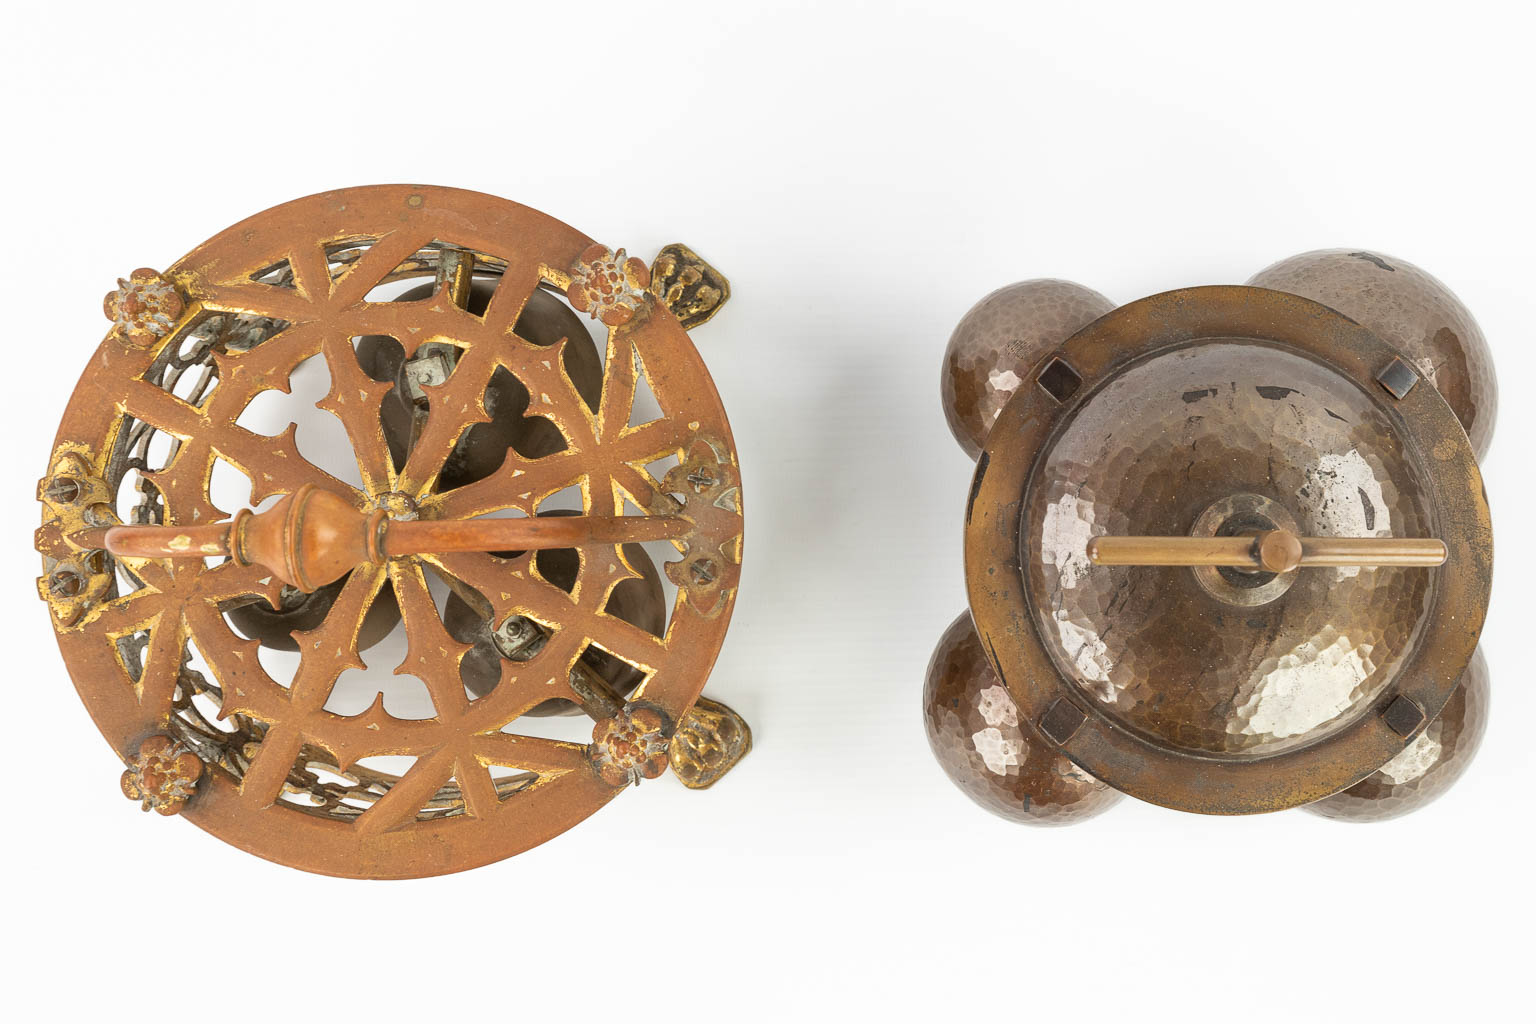 Een samengestelde collectie van 5 altaarschellen, gemaakt uit verschillende soorten metaal. (H:15cm)